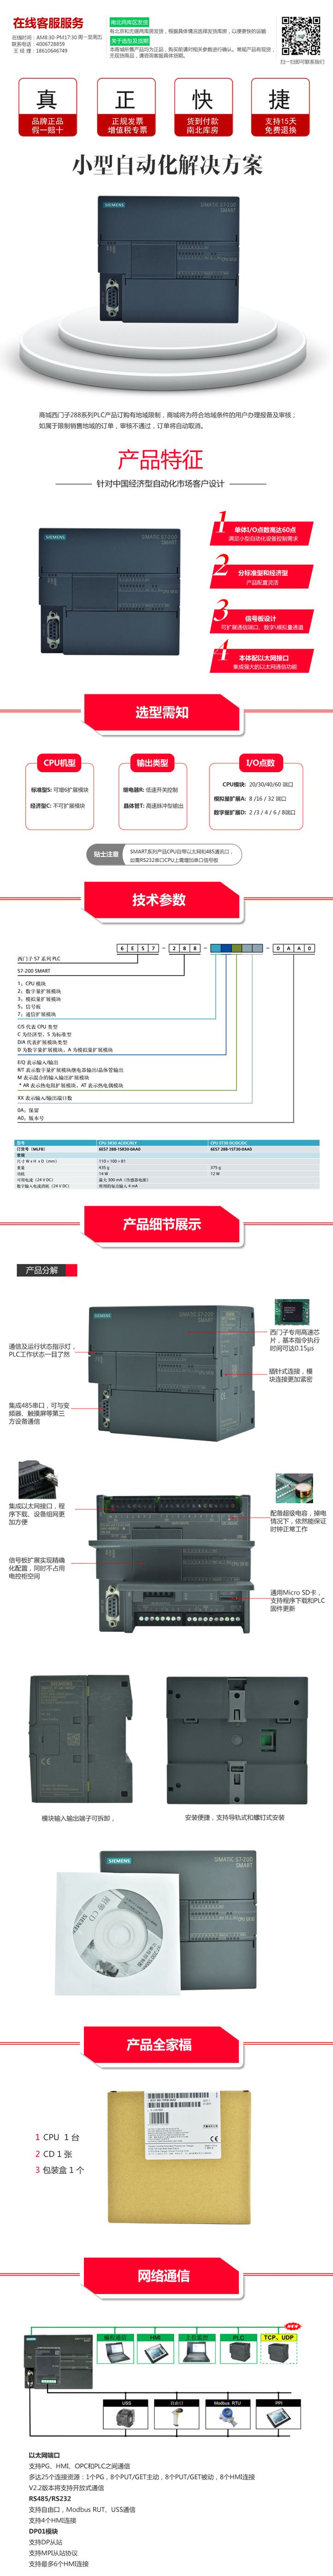 西门子S7-200SMART数字量输入/输出模块EMDT16